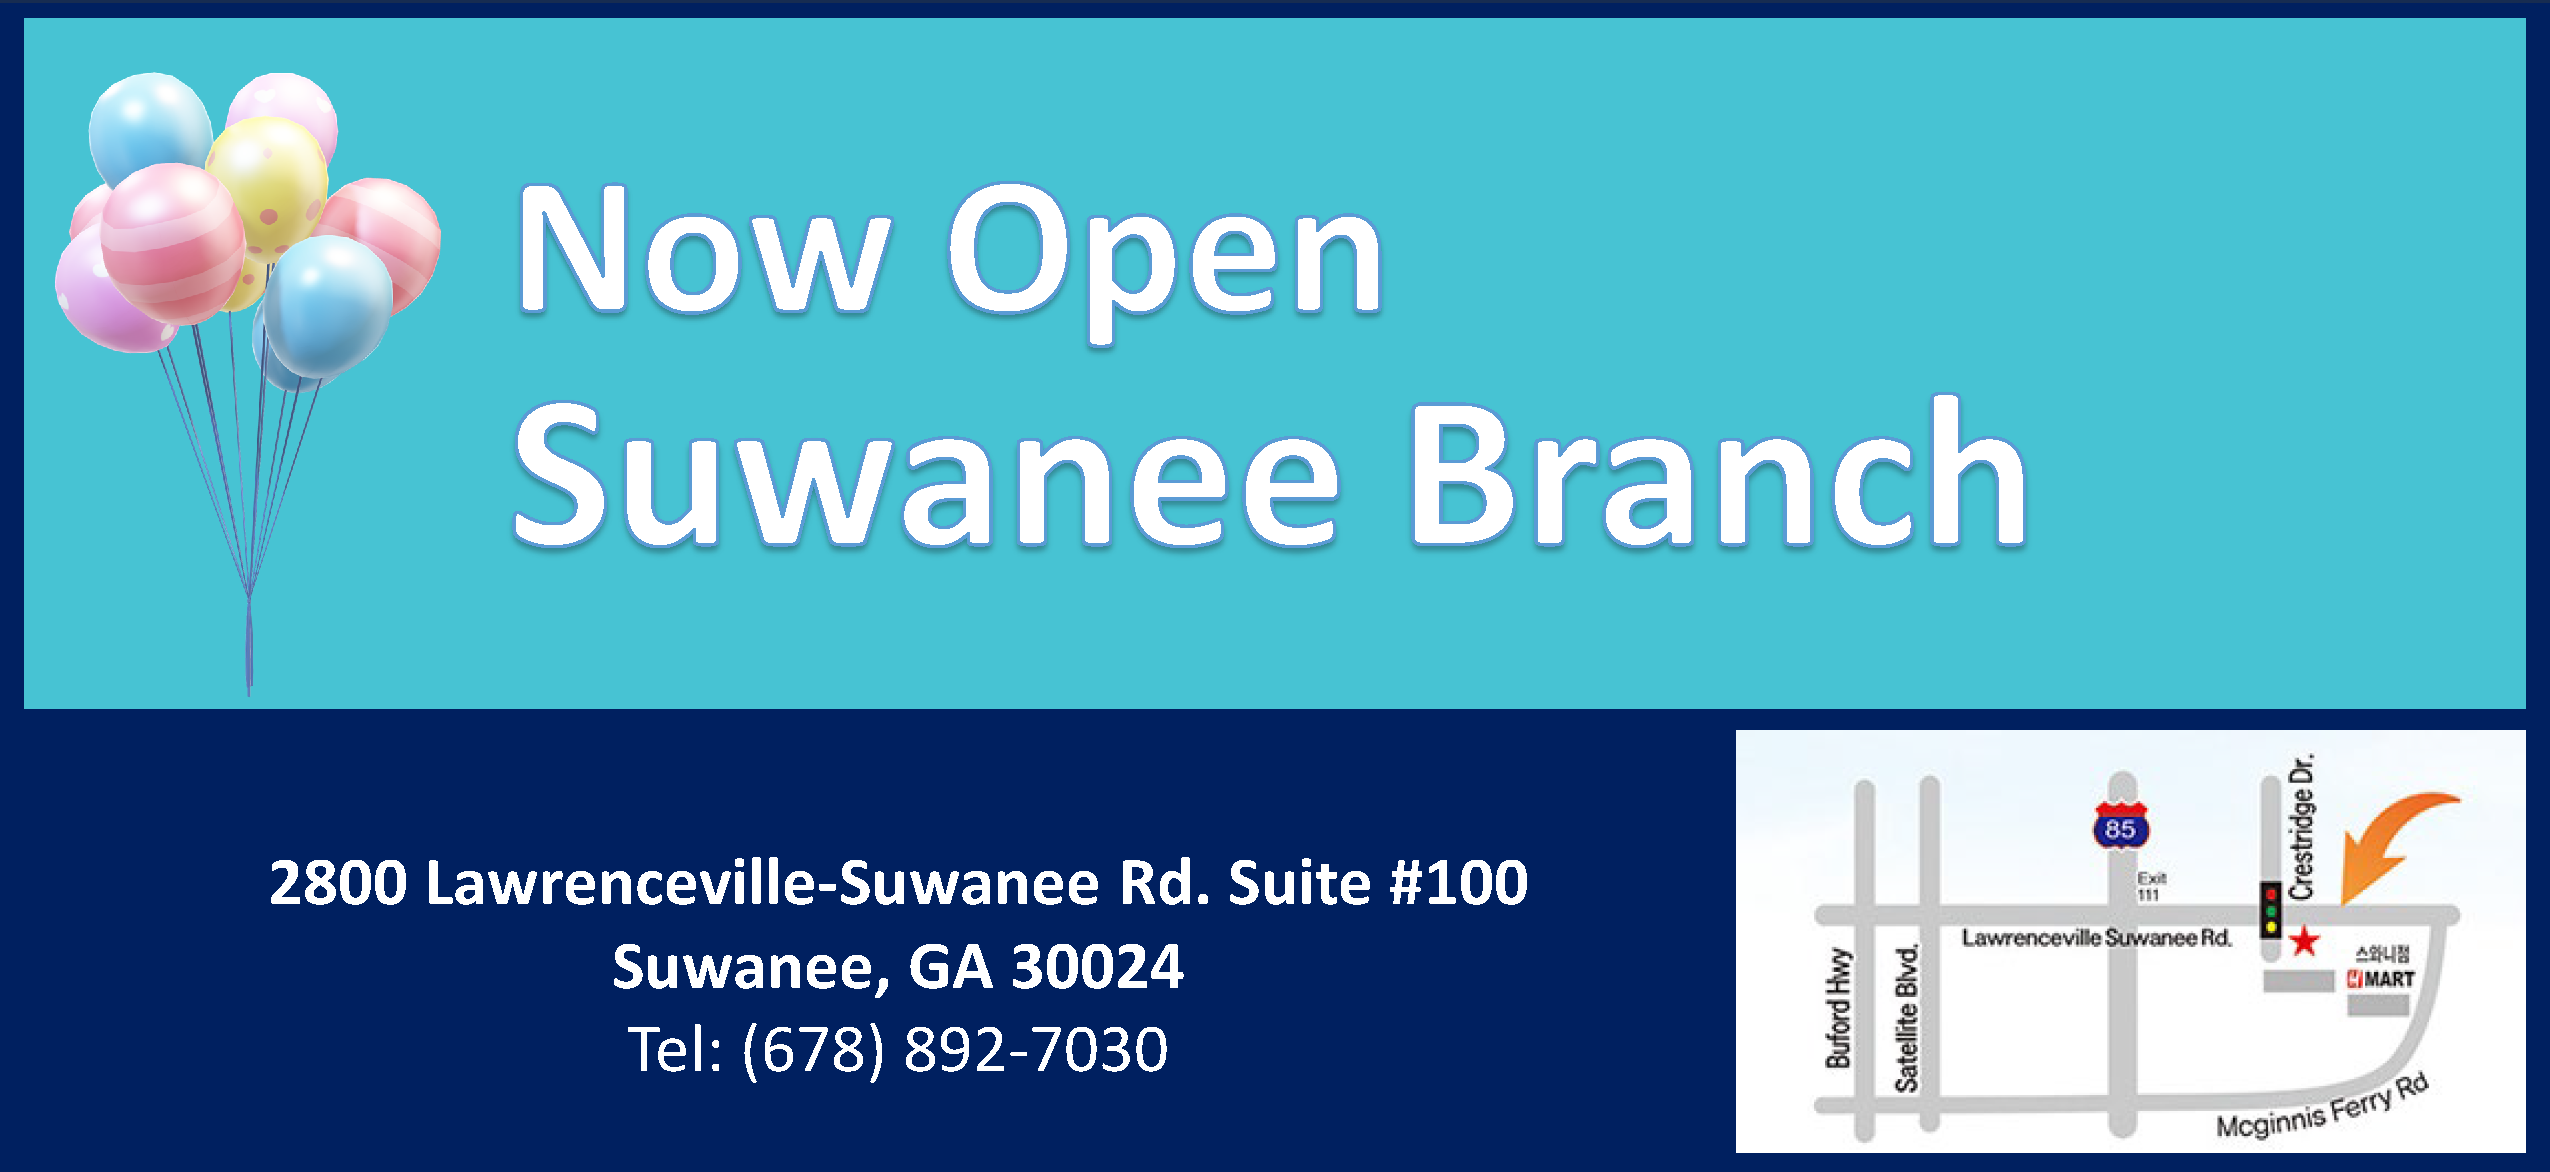 Suwanee-branch-now-open-1